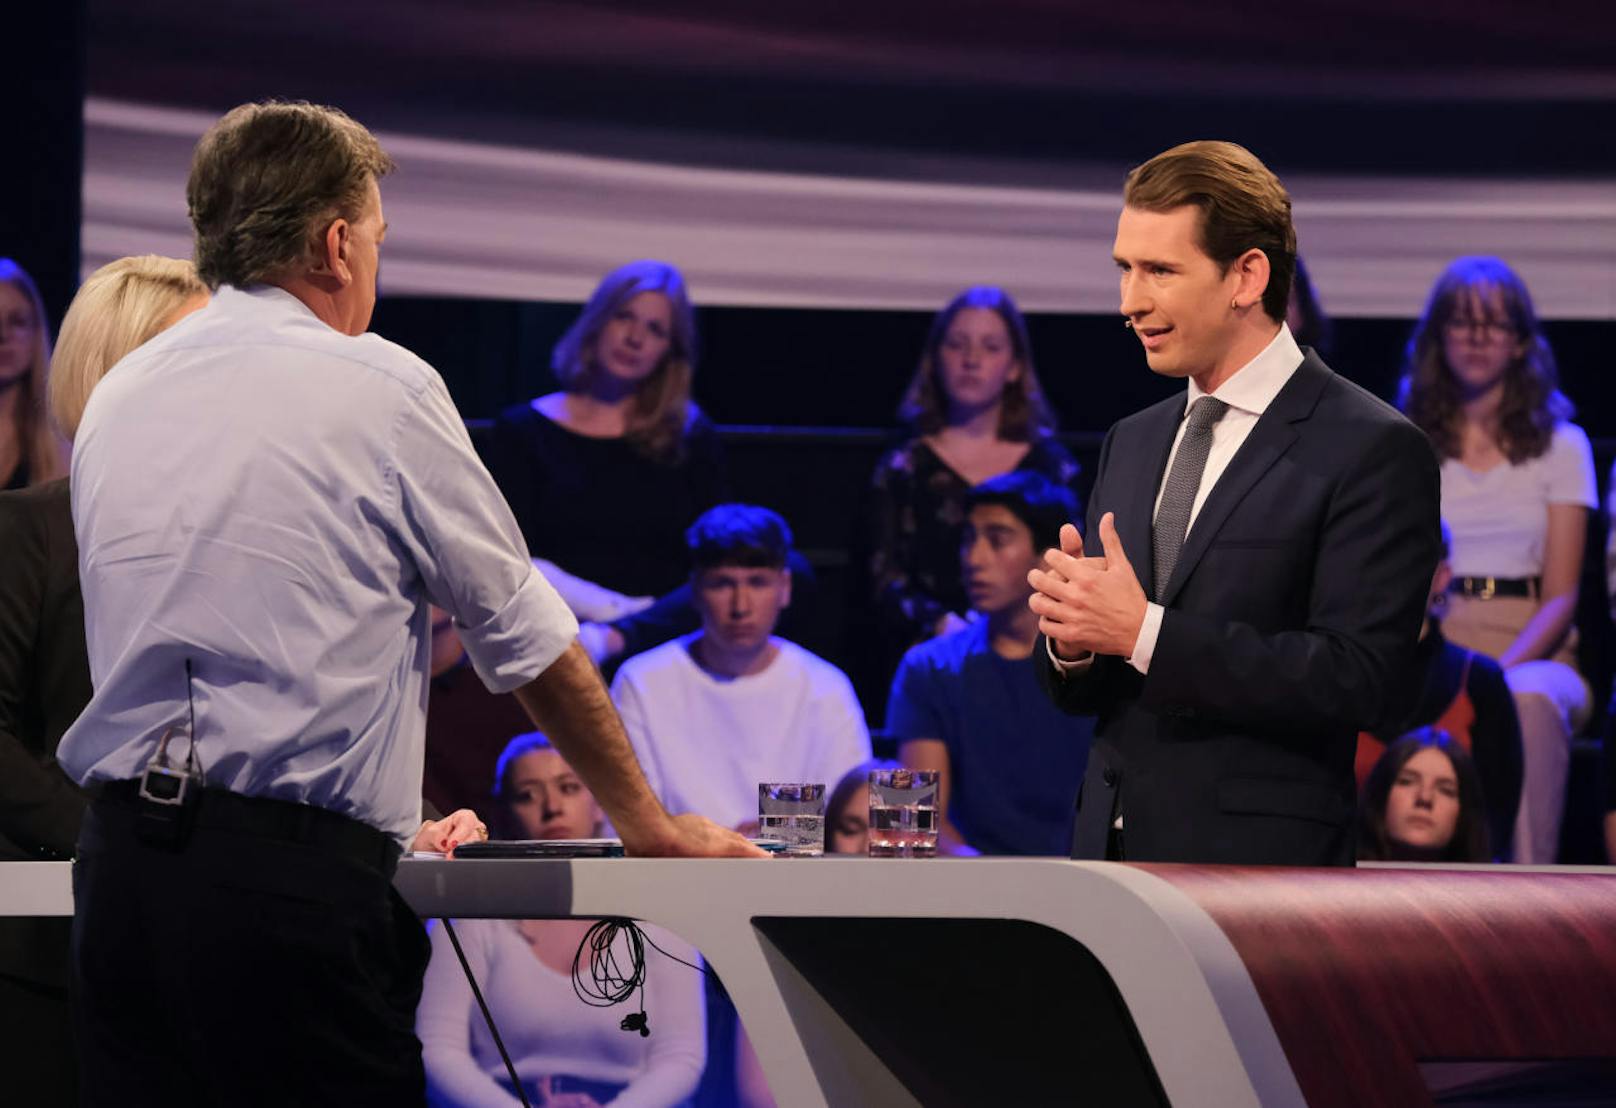 ÖVP-Chef Sebastian Kurz stellt sich zum ersten Mal einem TV-Duell. Kogler kämpft mit seinen Grünen um den Einzug ins Parlament.